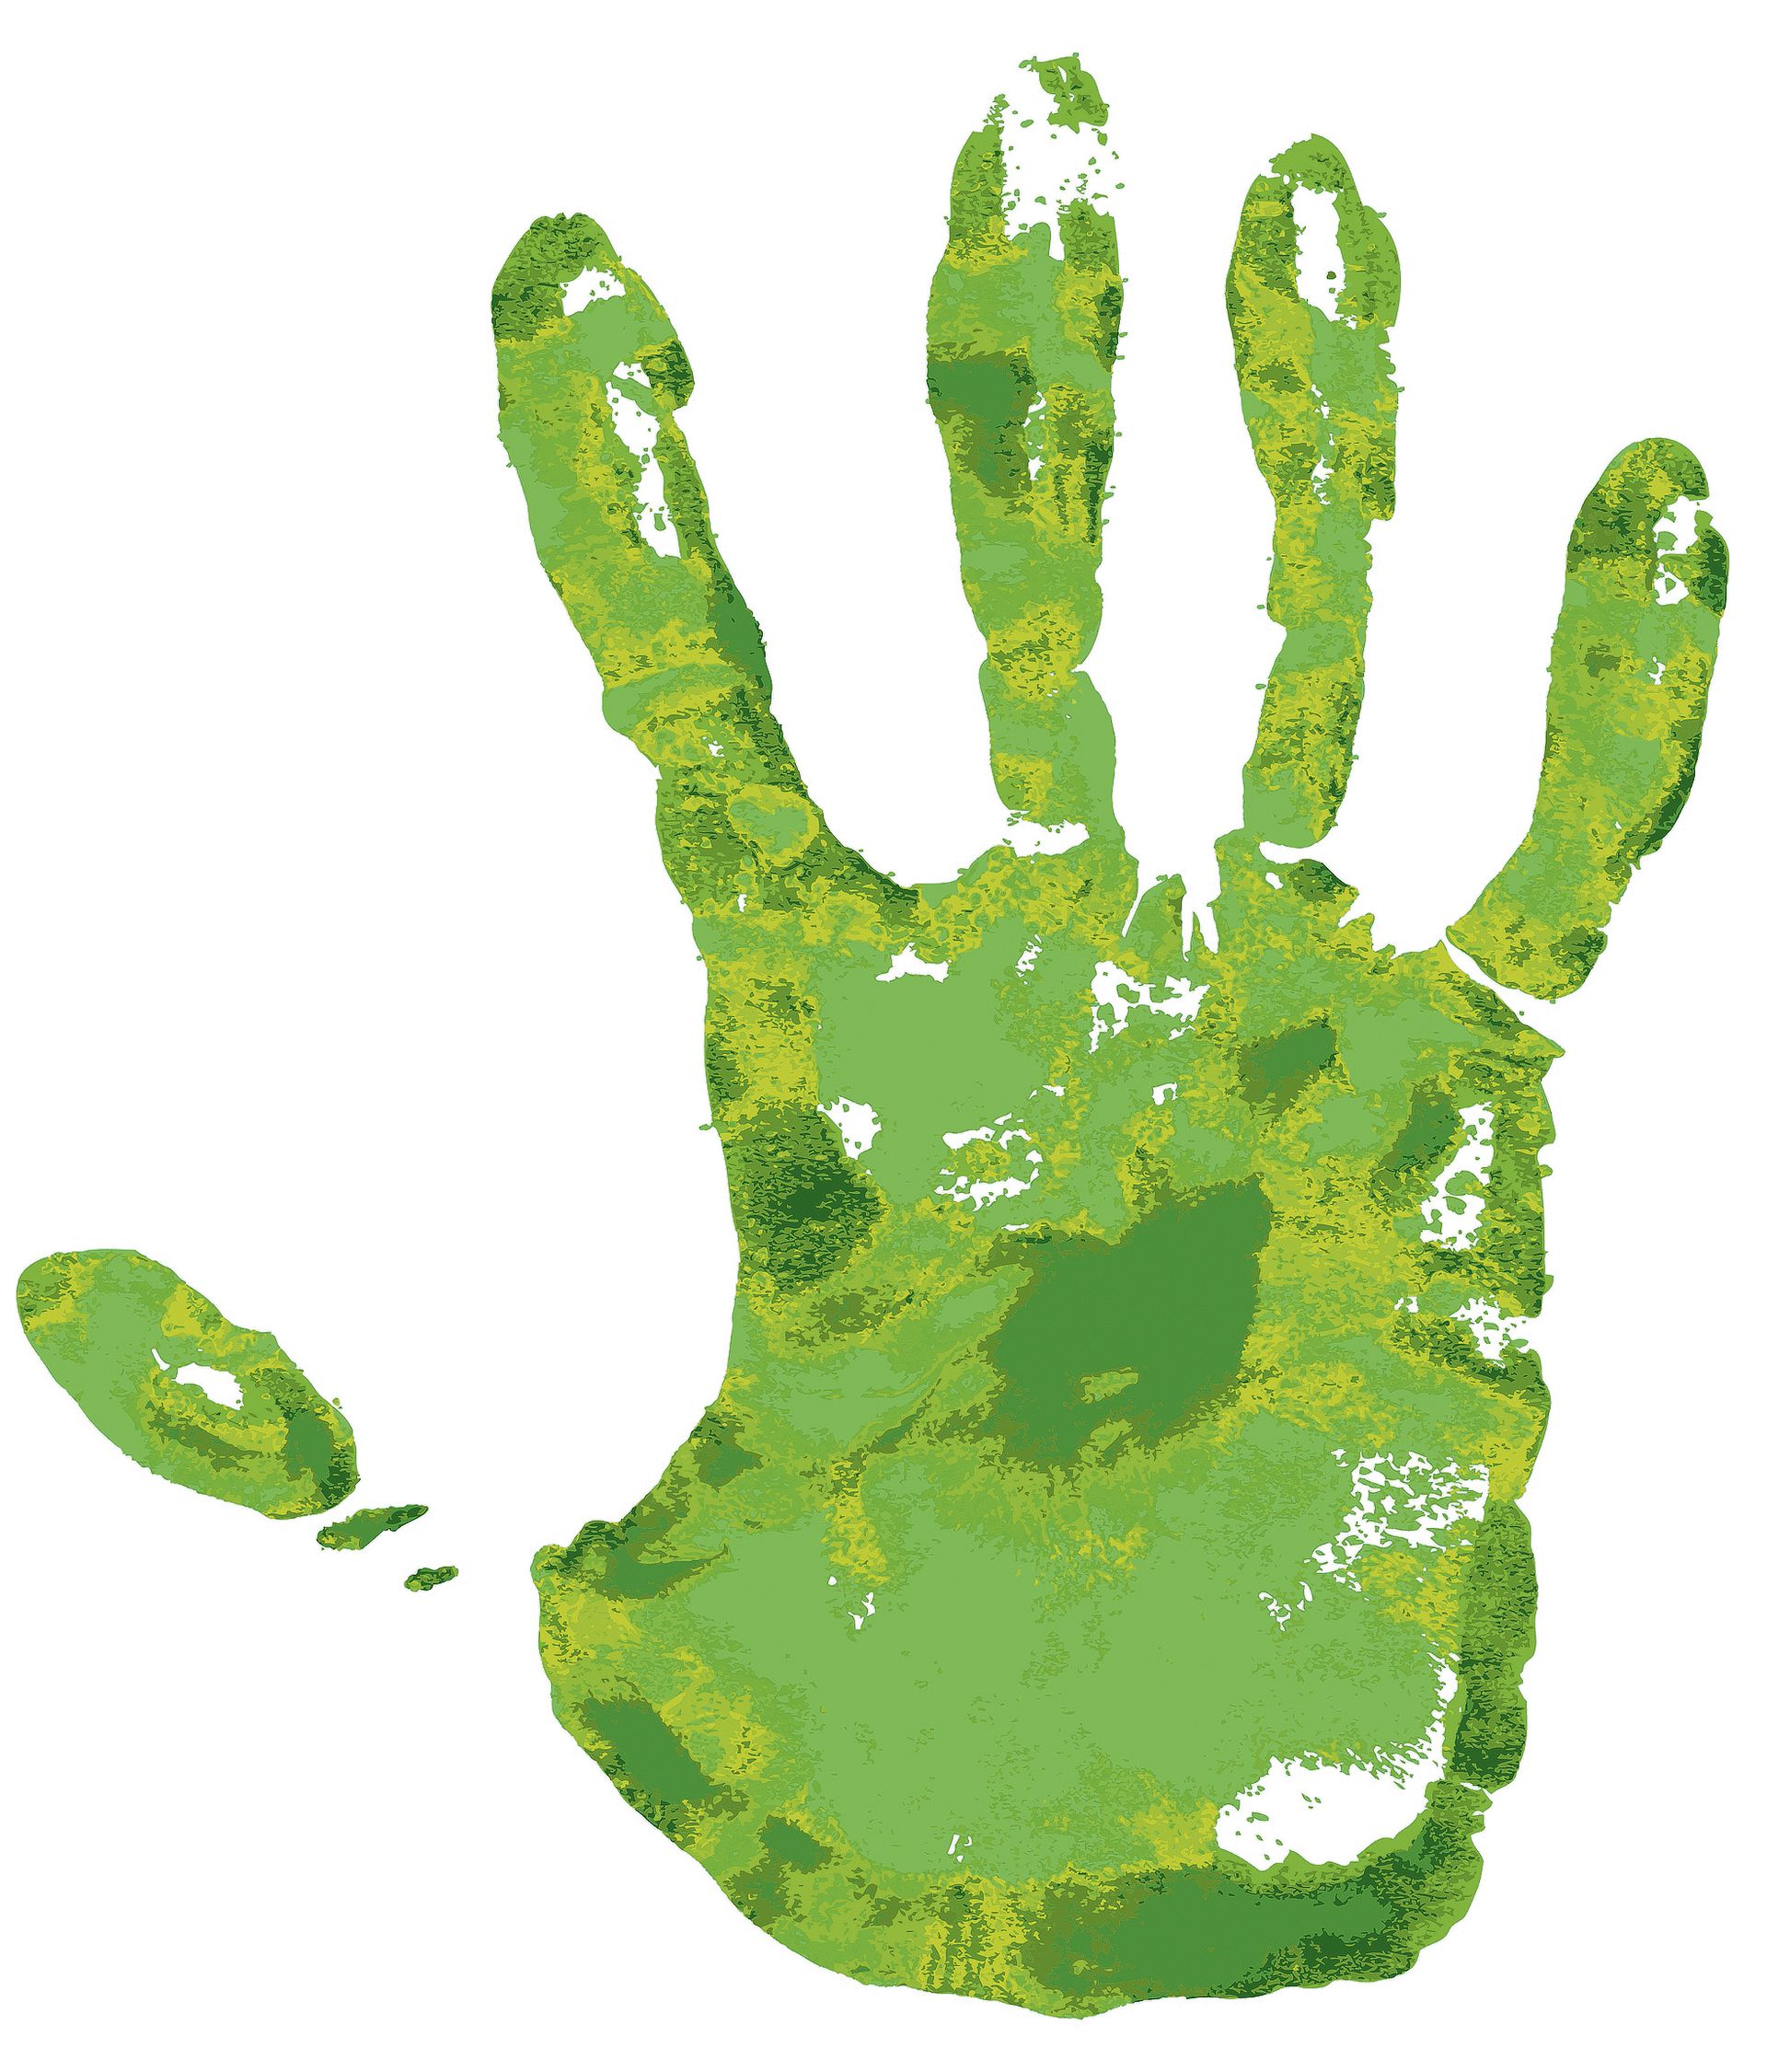 Правая рука зеленая